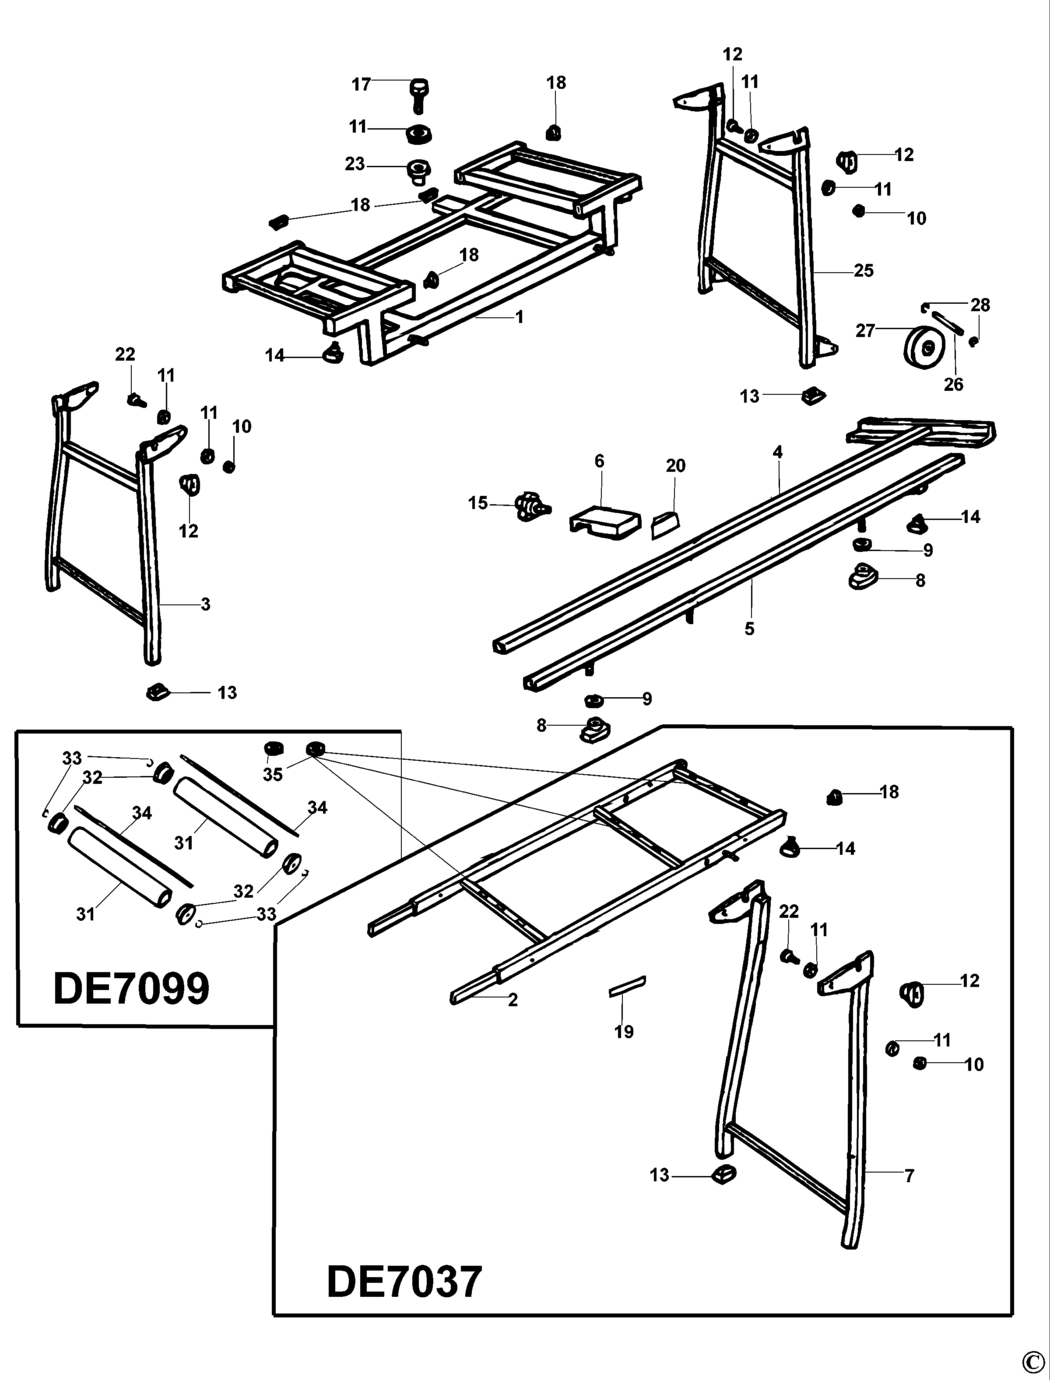 Dewalt DE7073 Type 1 Extension Table Spare Parts